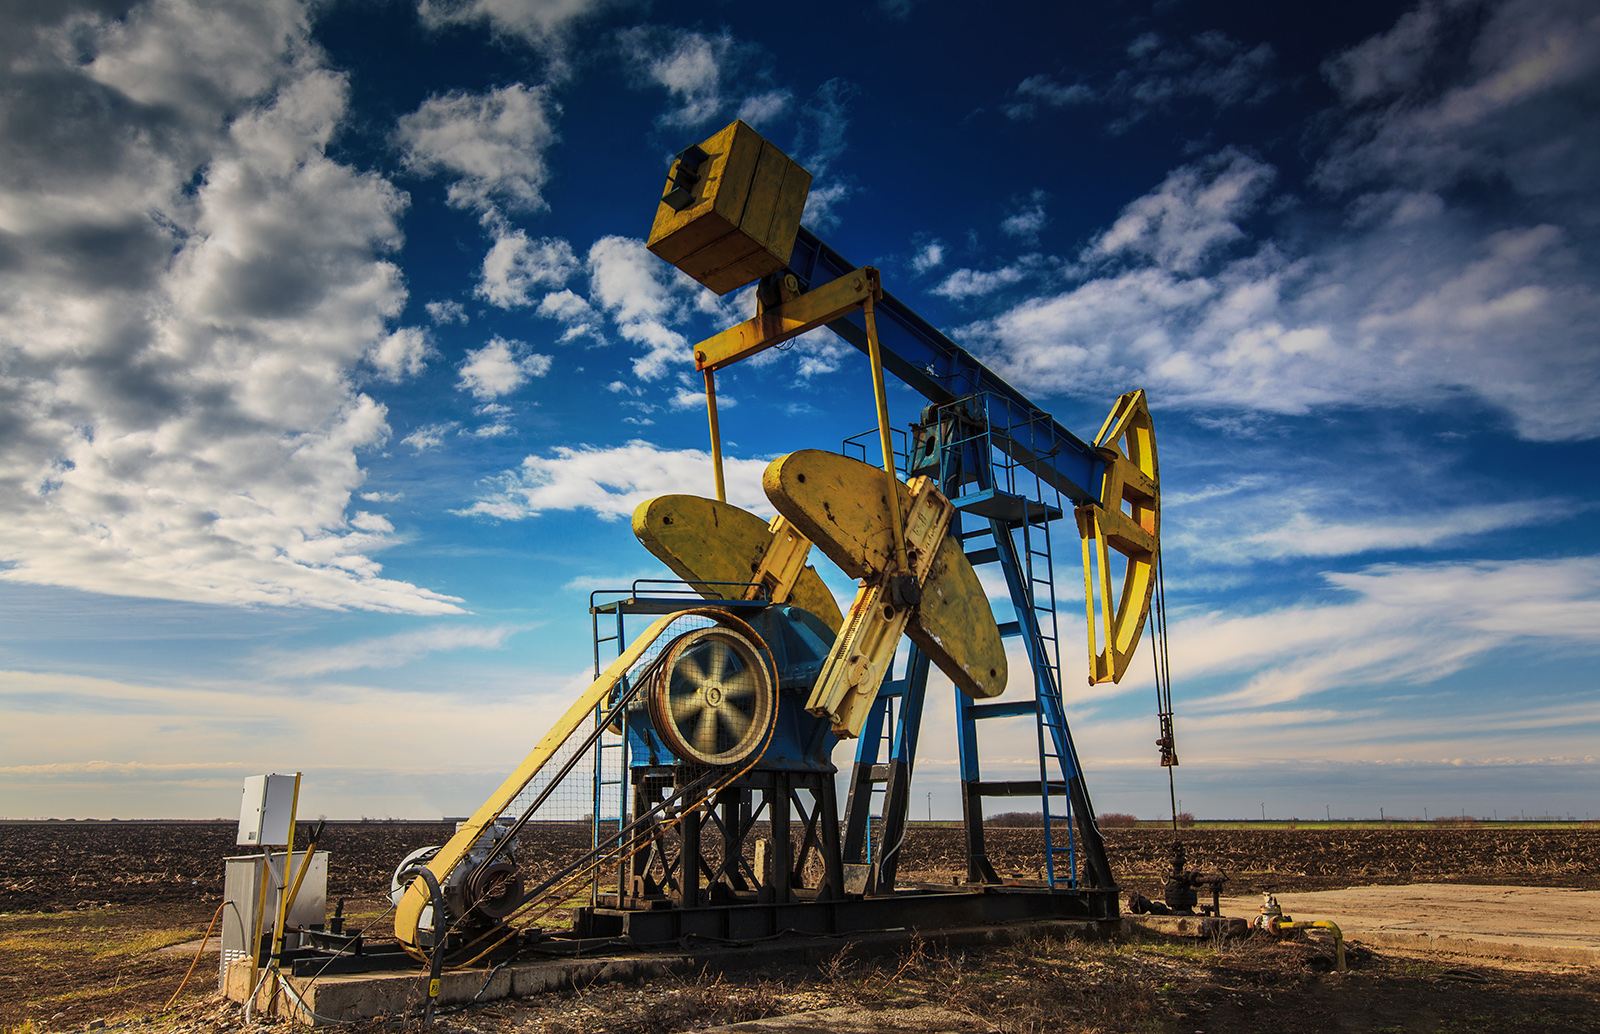  “No hay fracking en la huasteca potosina”: CEA